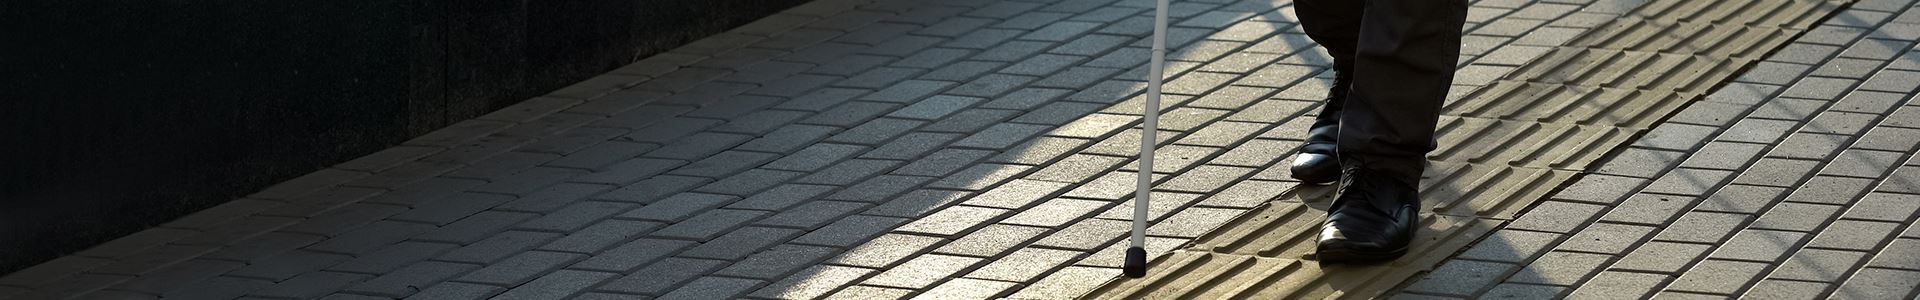 Abbildung eines Unterkörpers mit schwarzer Hose und schwarzen Schuhen und mit einem Blindenstock für Sehbehinderte auf einem grauen Bürgersteig mit einer ertastbaren Bodenleiste für Sehbehinderte.